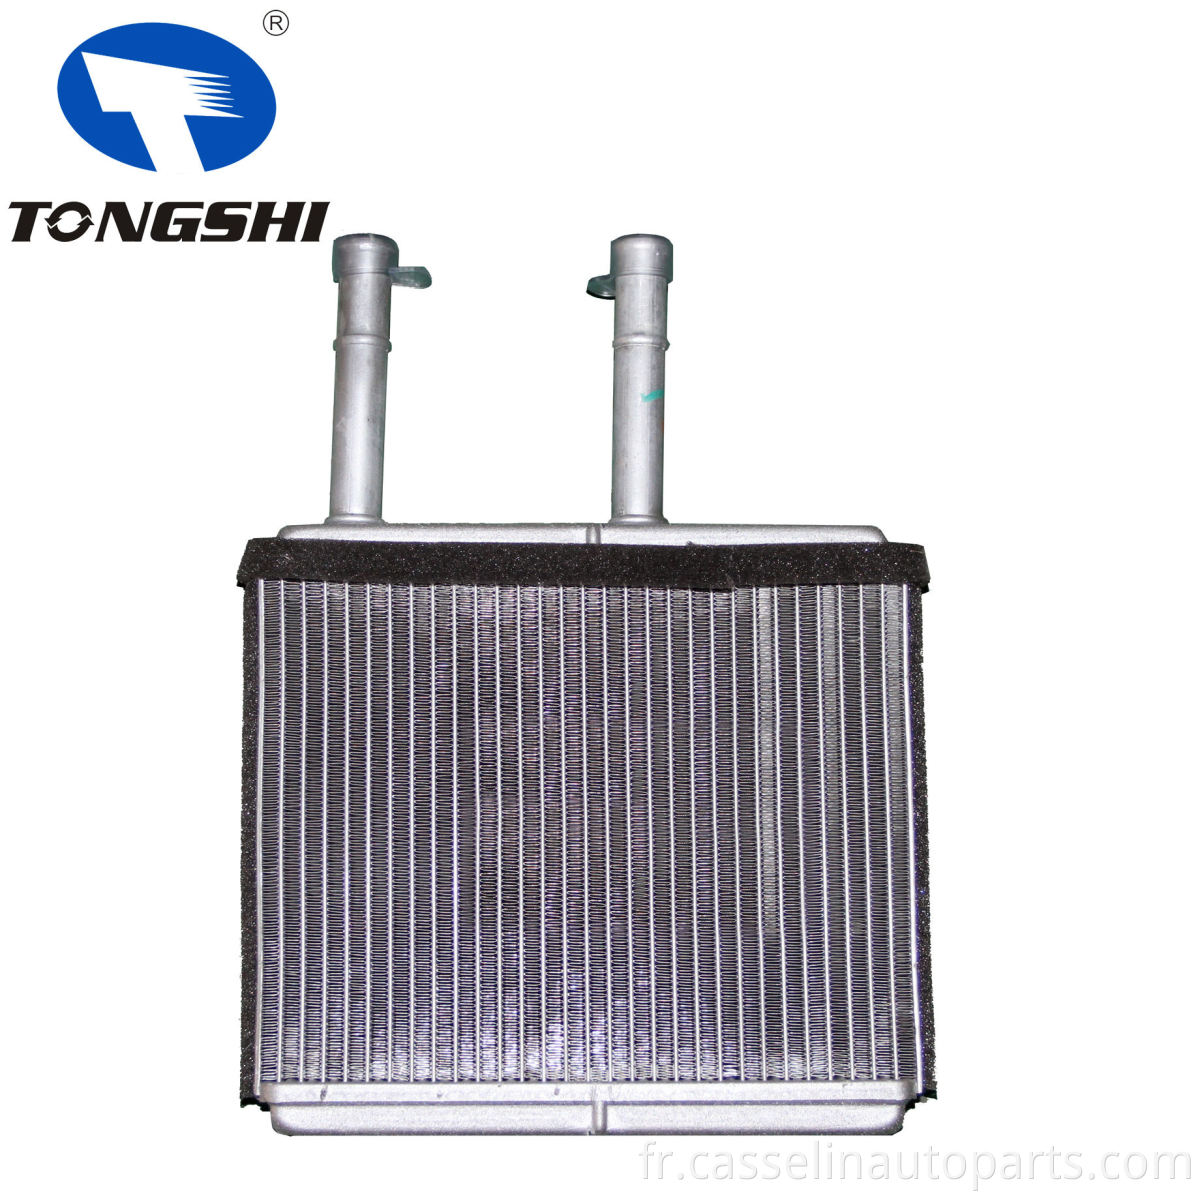 Tongshi Iatf16949 Core de chauffage en aluminium de voiture pour Nisan Succe 1.6L